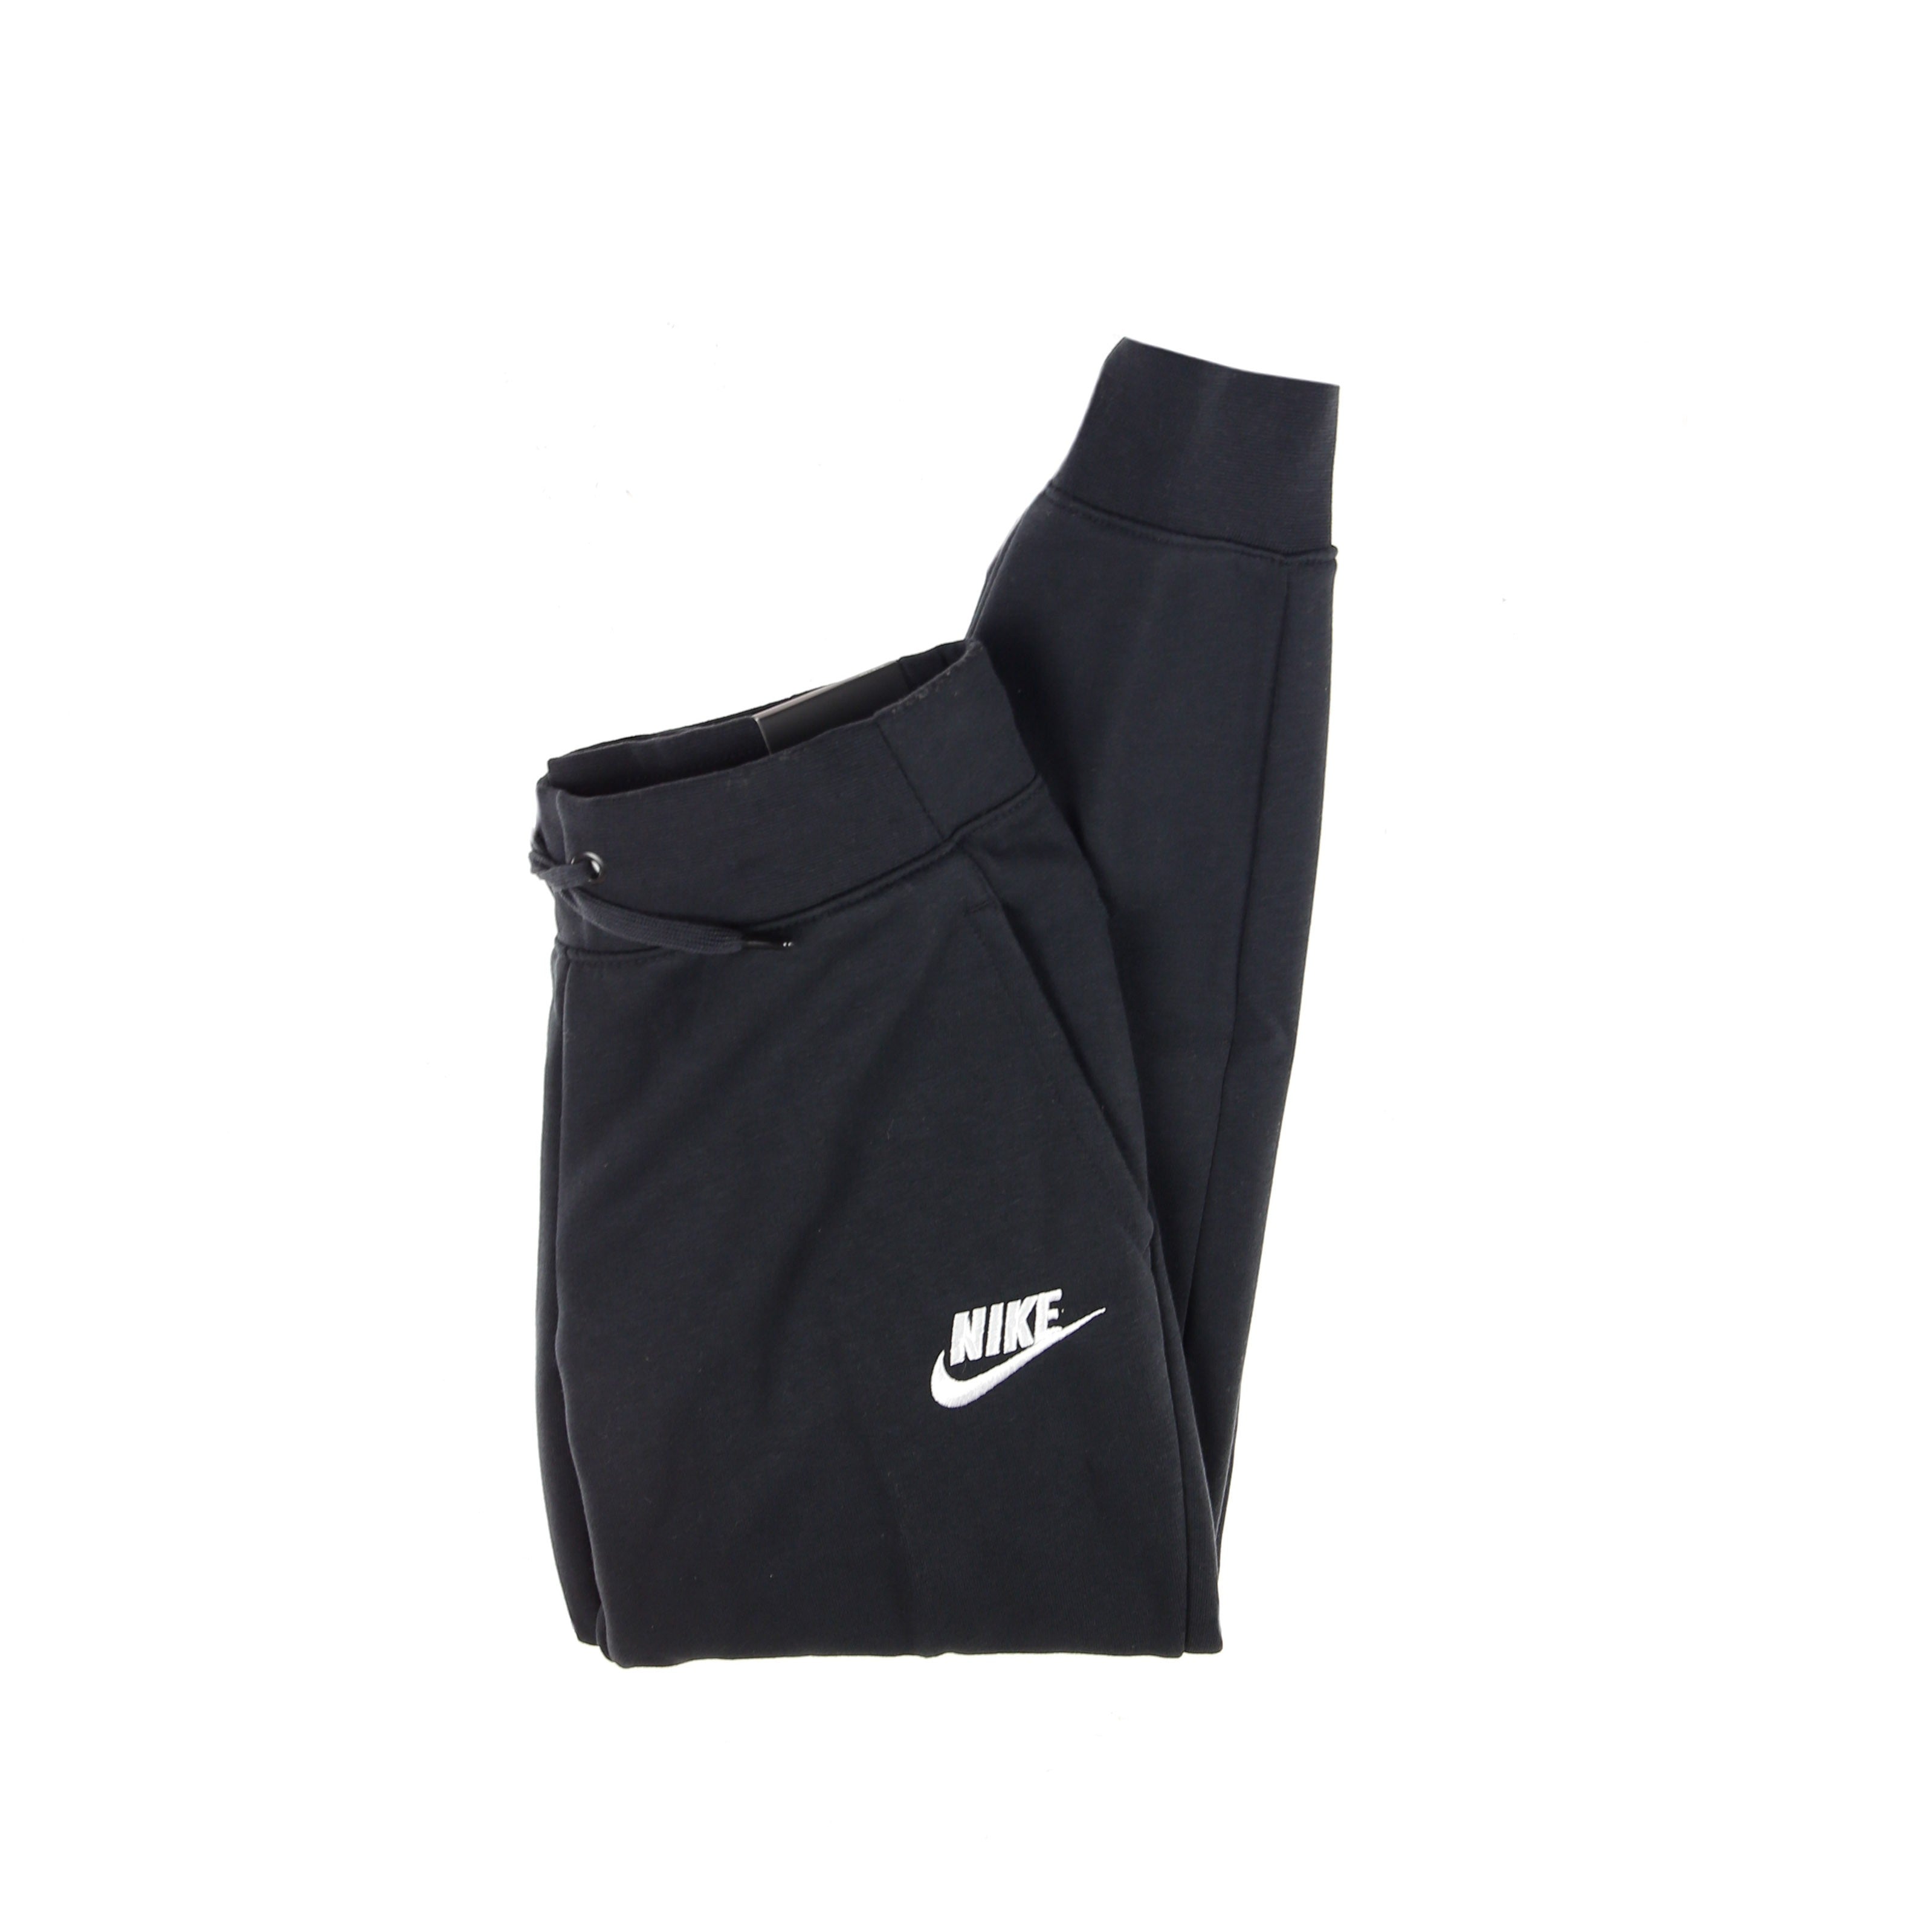 Nike, Pantalone Tuta Felpato Ragazza Sportswear Pant, Black/white